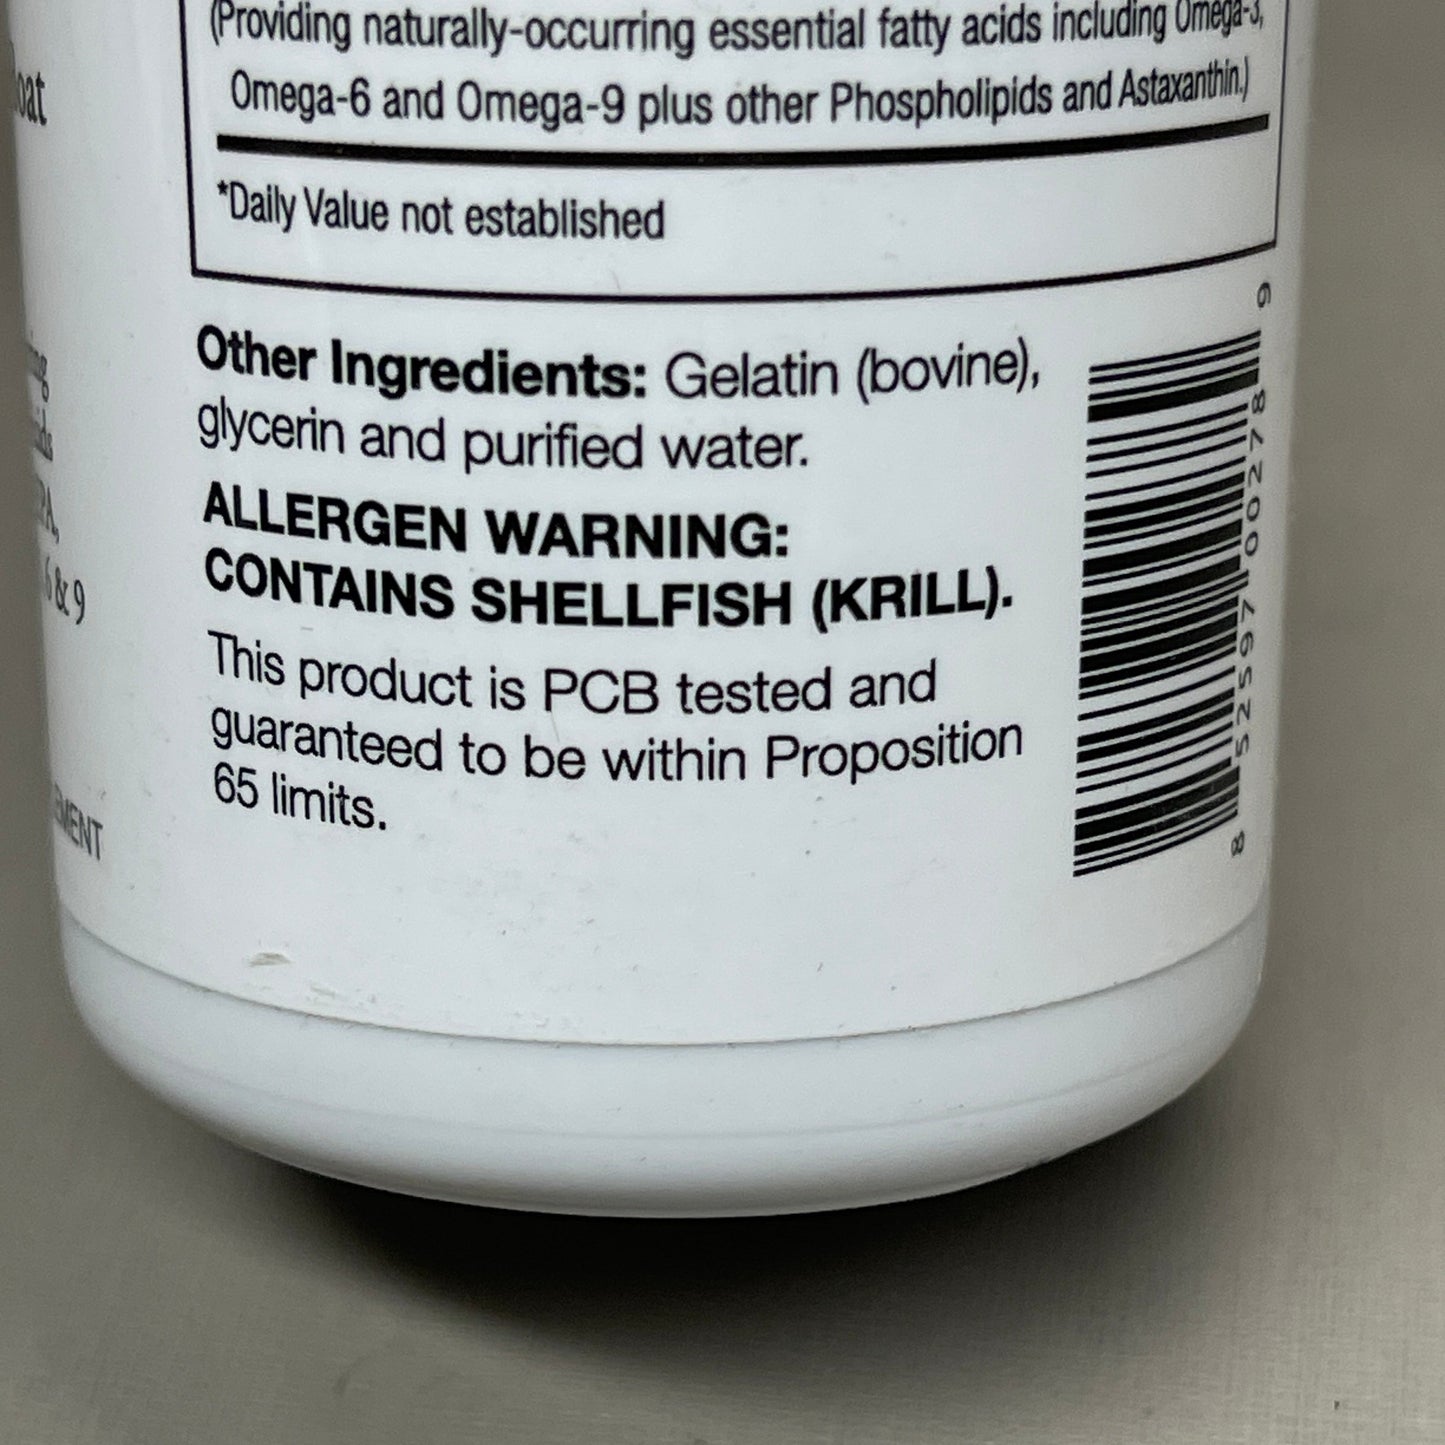 ZA@ CAPTAIN KRILLS 12 Bottles Krill Oil Dietary Supplement Omega 3, 6, 9 - 720 Softgels BB 11/23 (New)